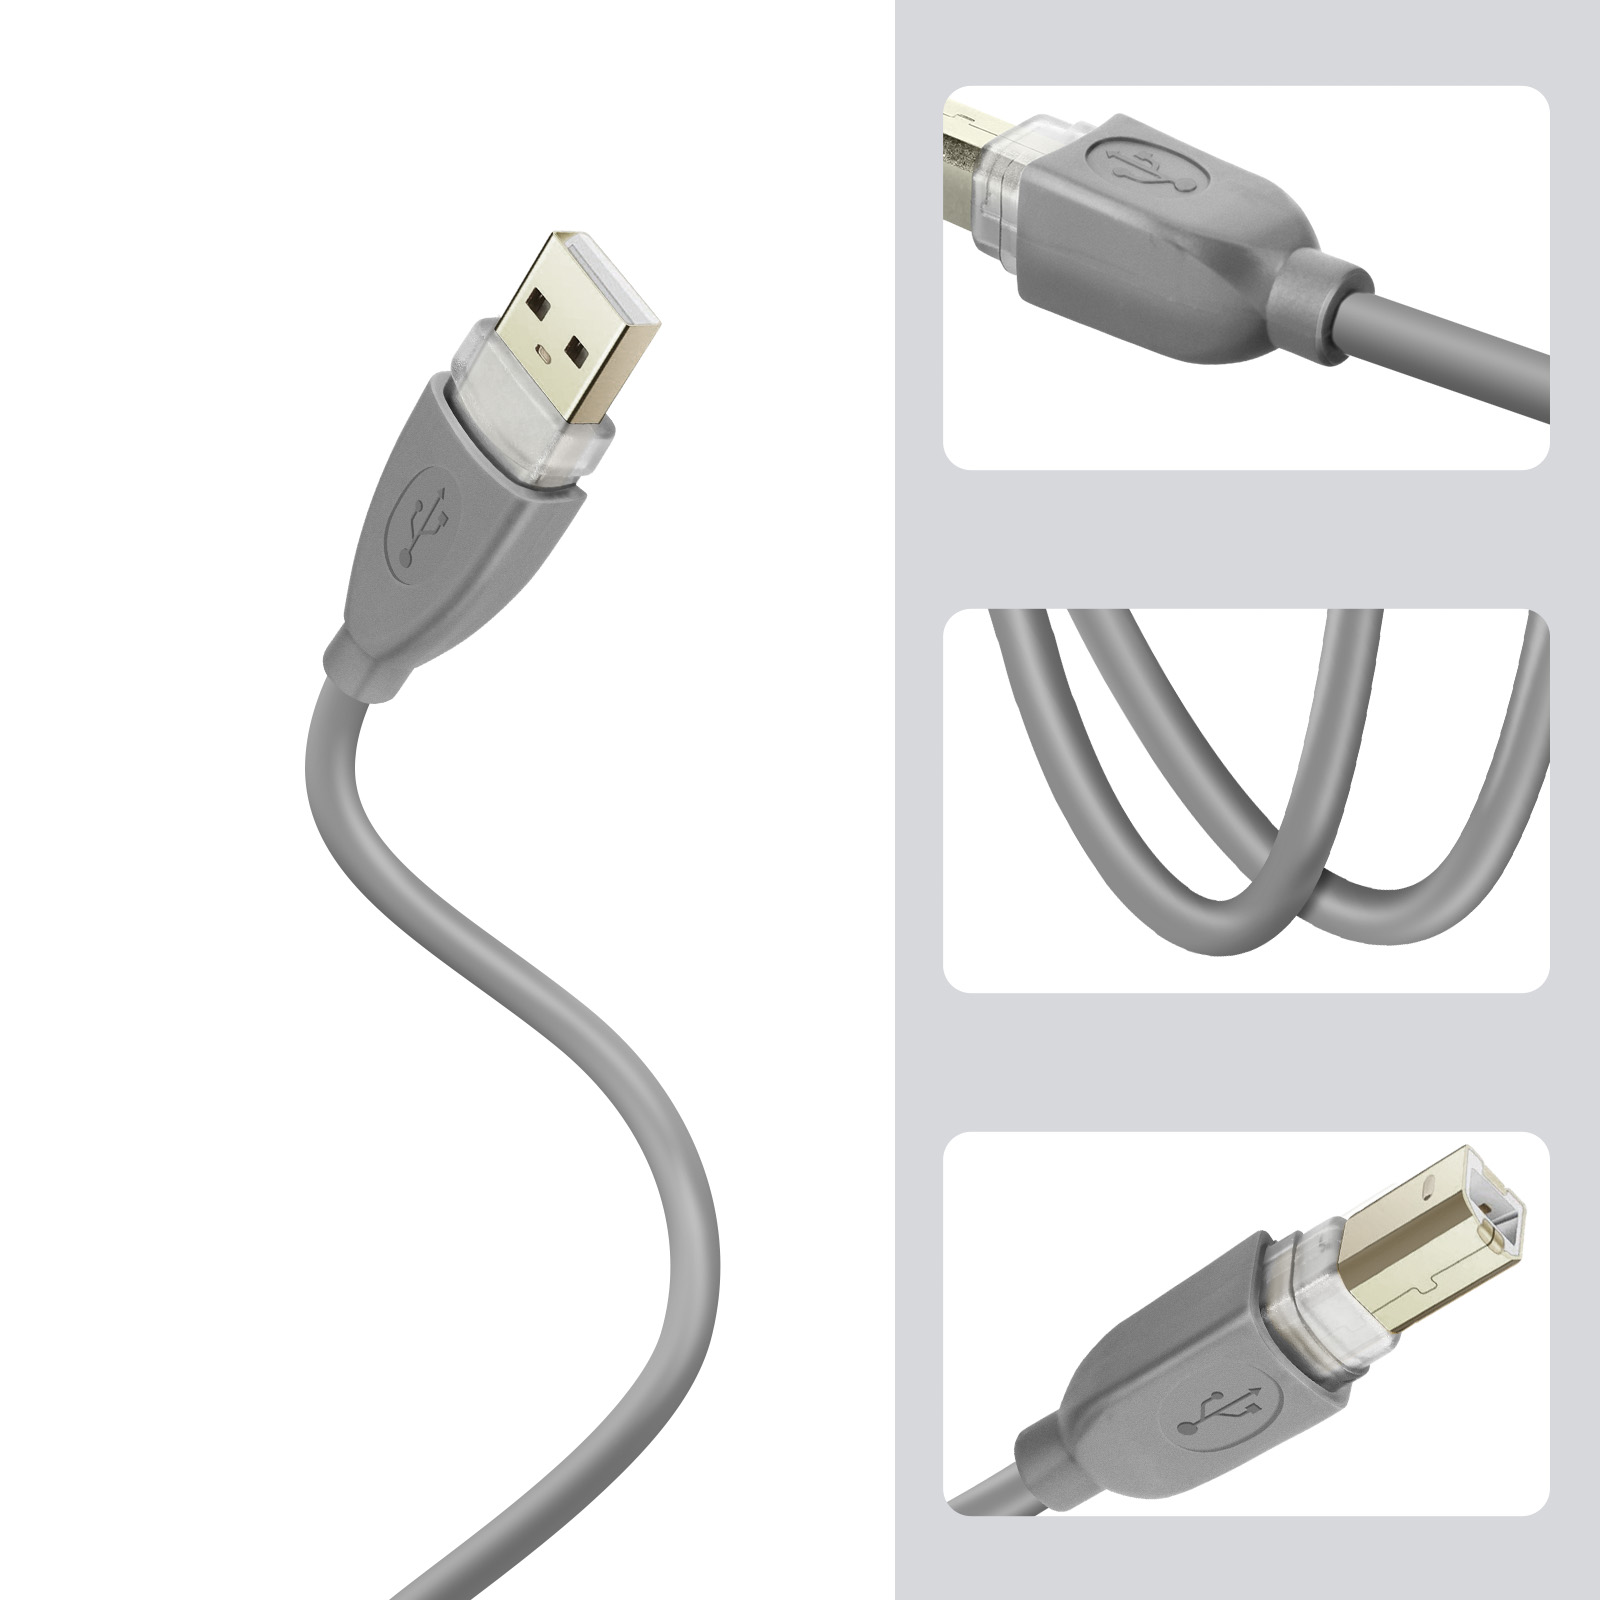 Câble imprimante USB 2.0 3 mètres LinQ, Port USB Type B pour